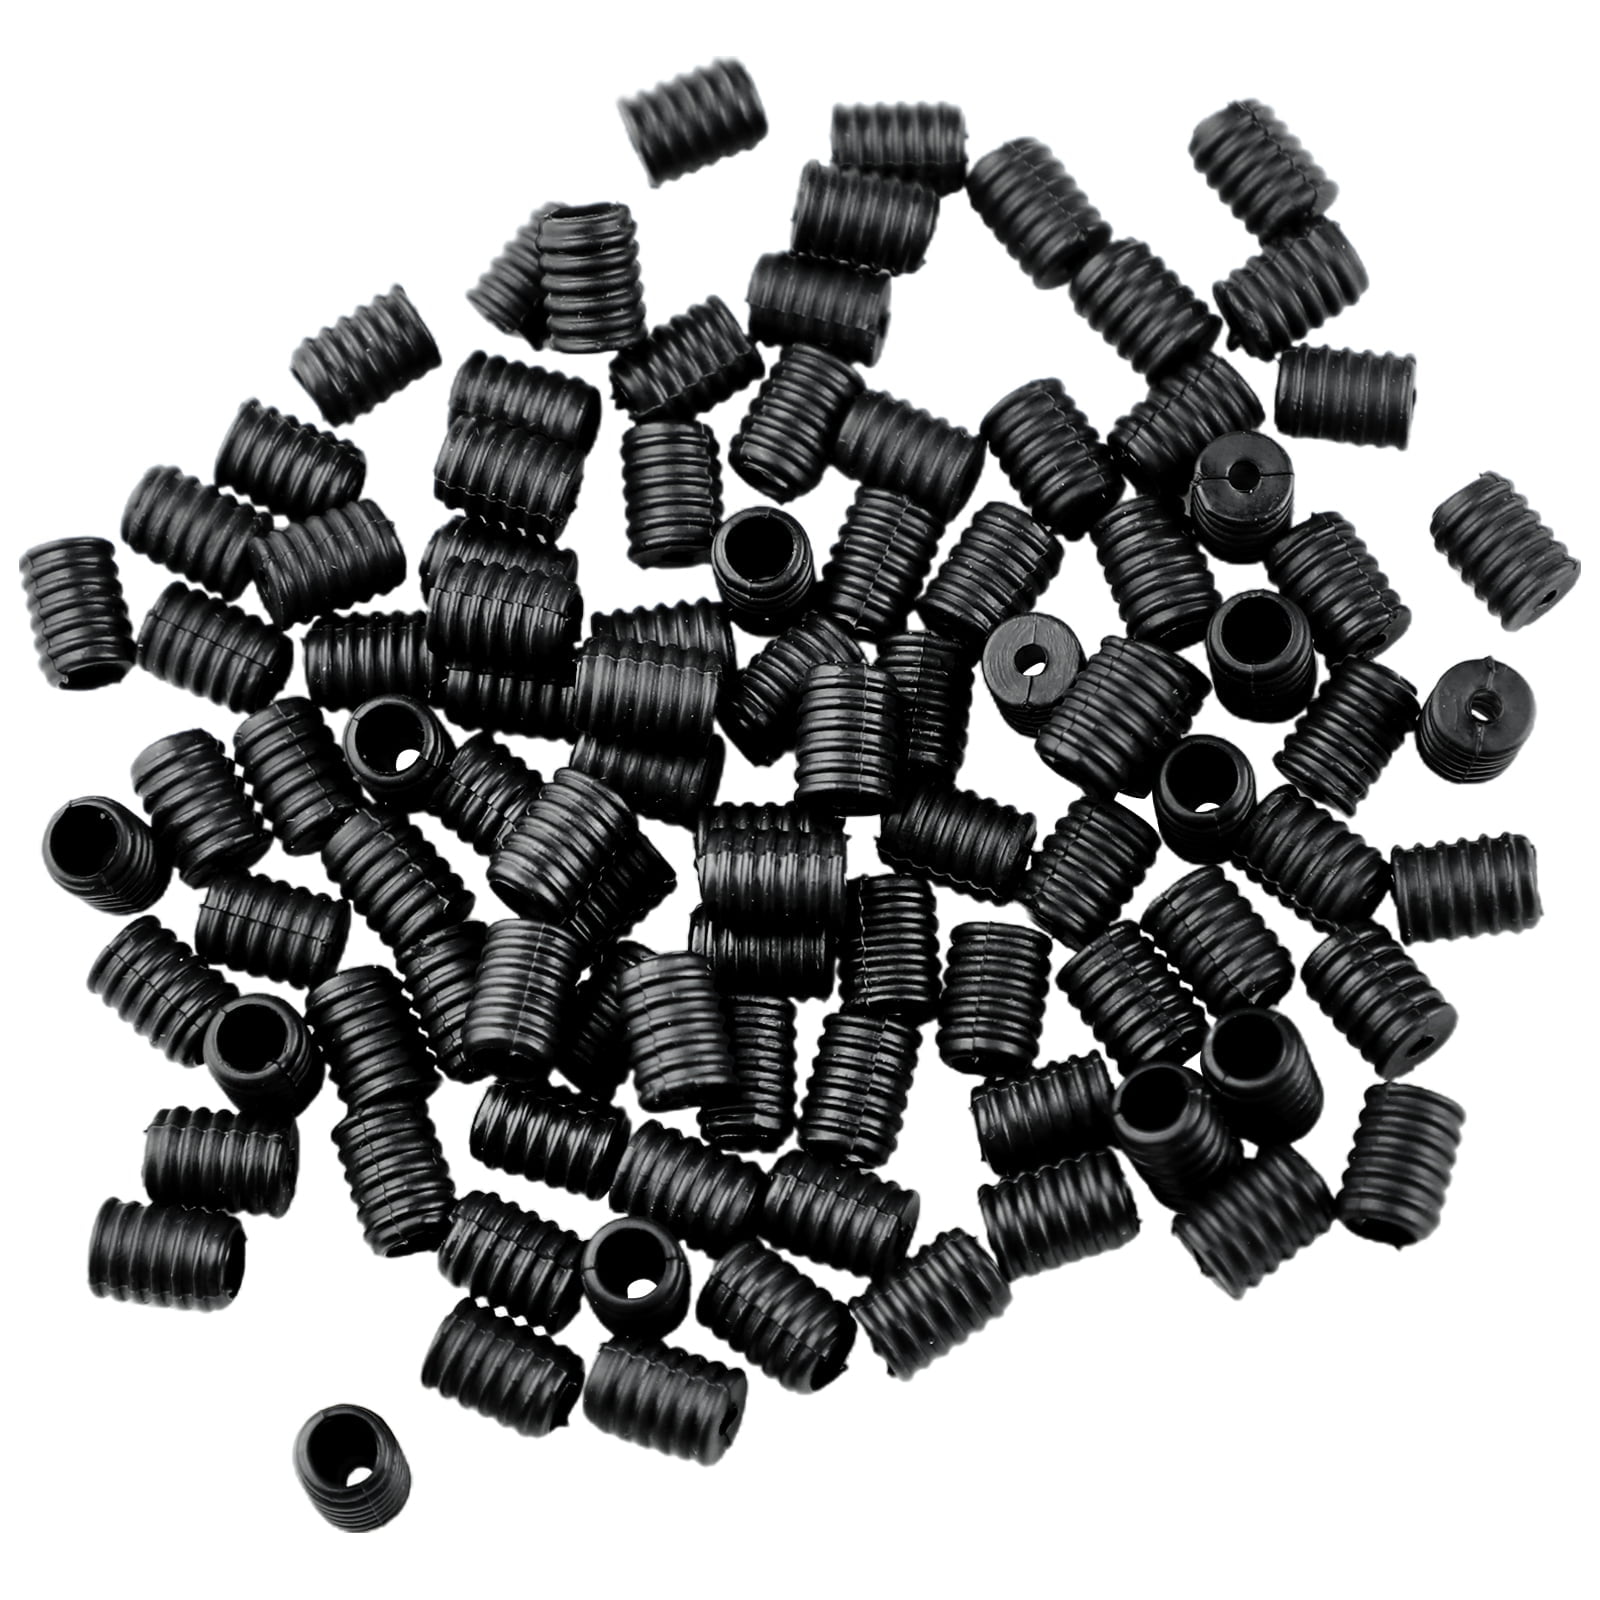 Fablastic™ Black Silicone Cord Locks, 10mm